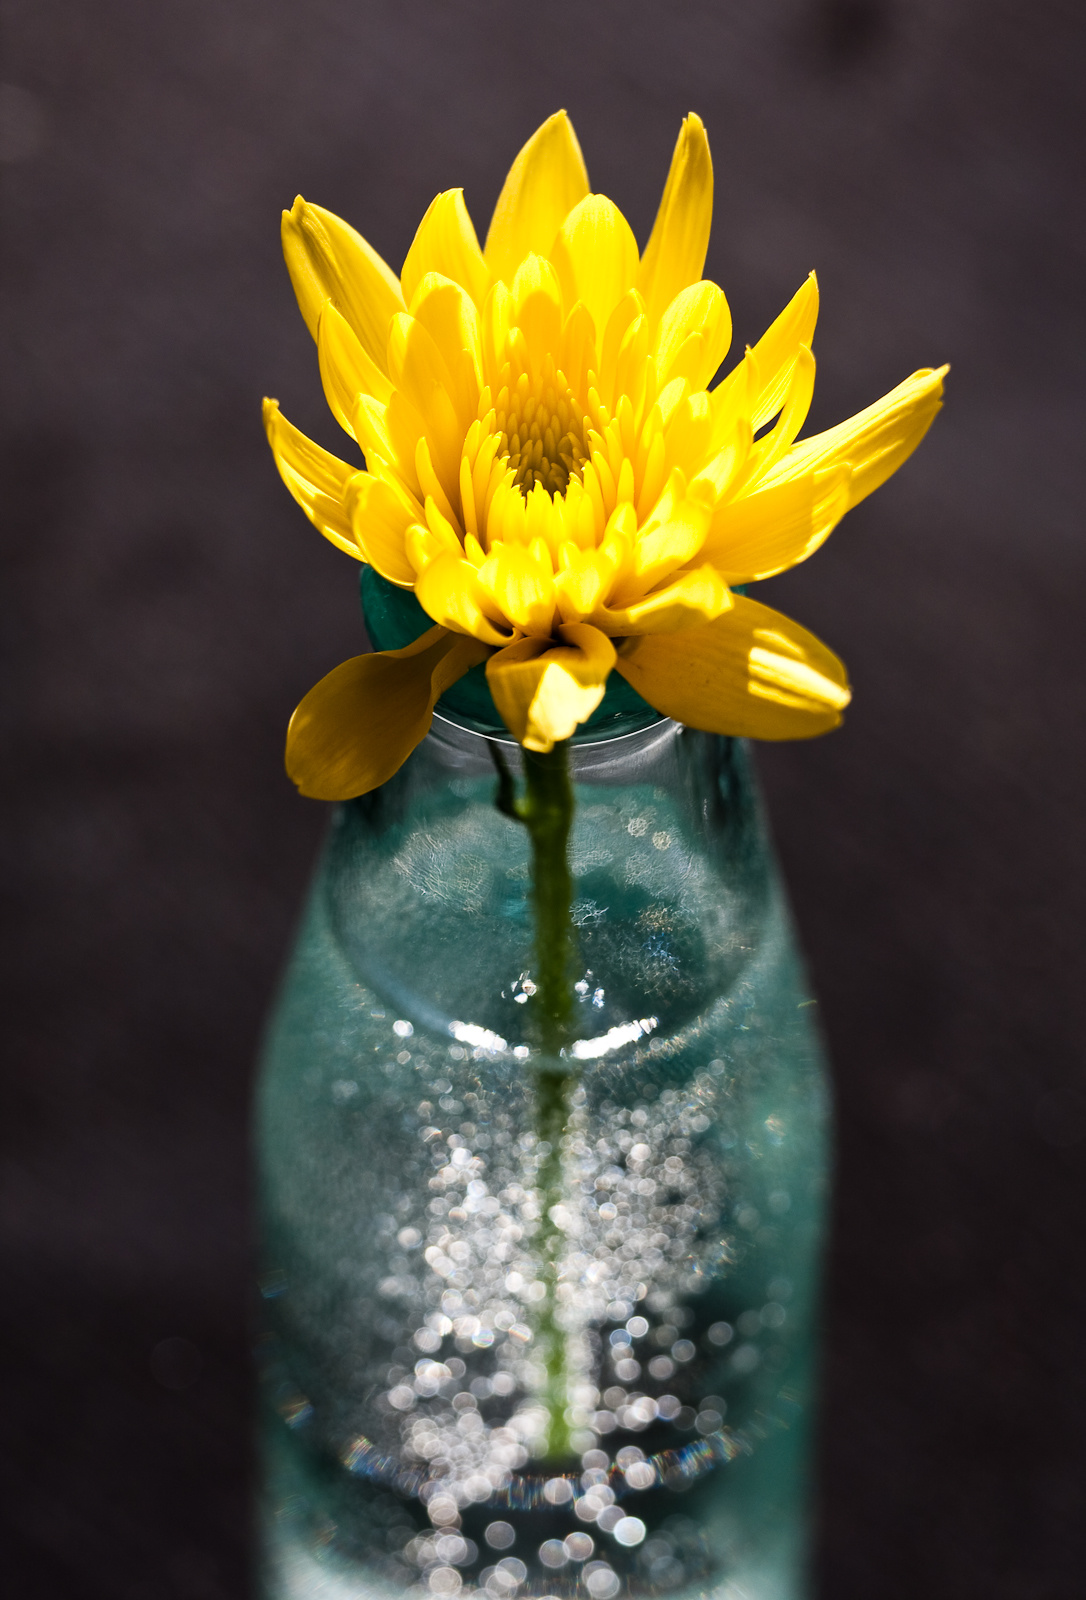 Virág üvegben 2